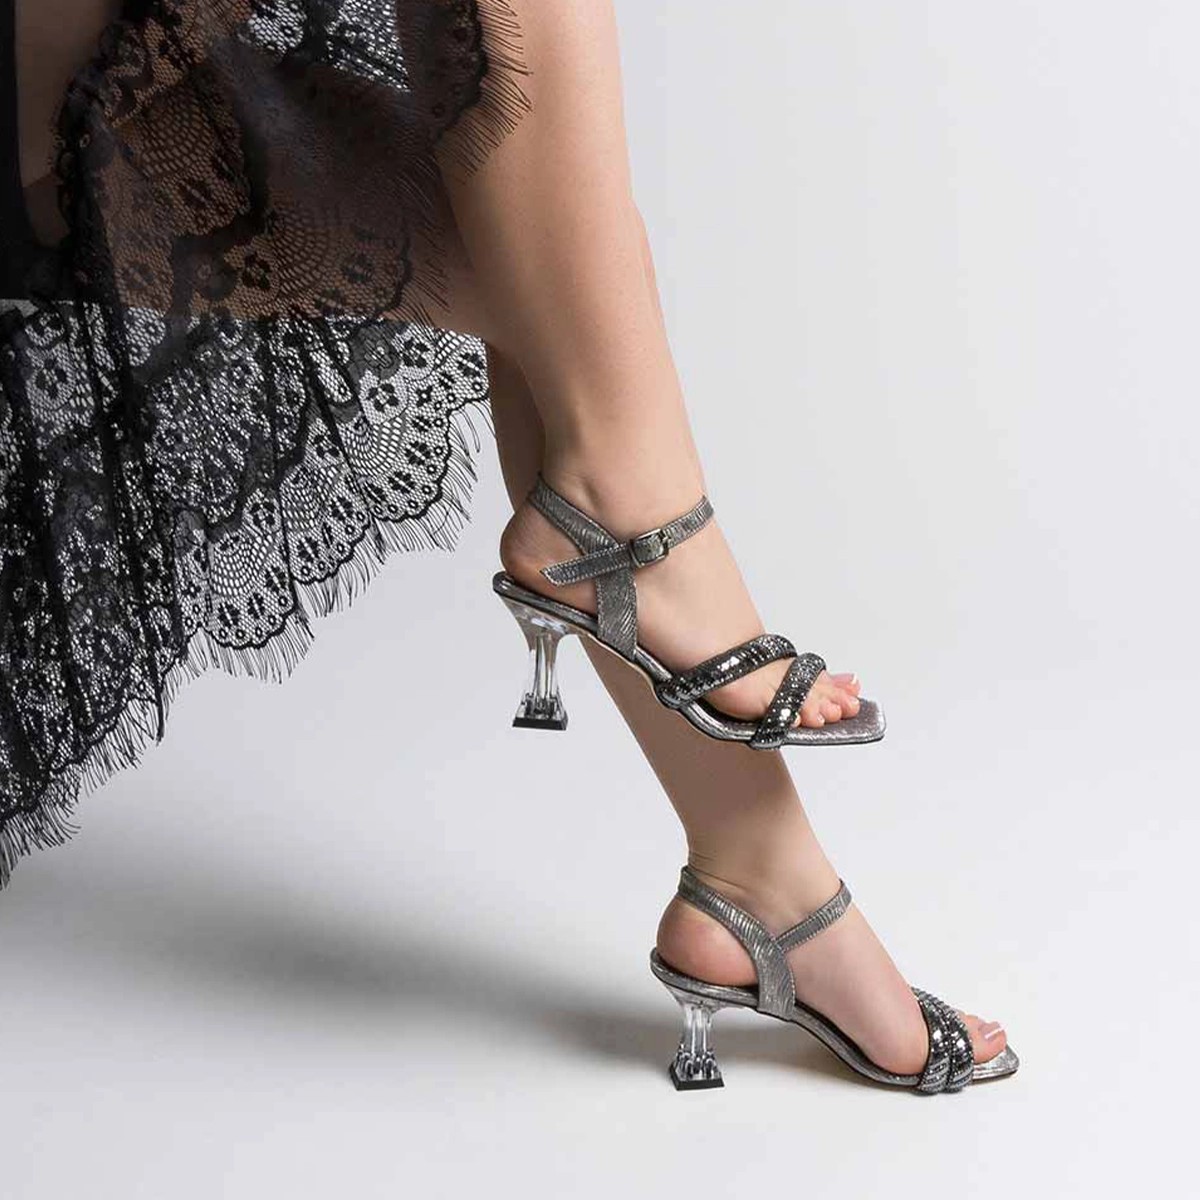 Tekstil Taşlı İnce Topuklu Ayakkabı - Platin